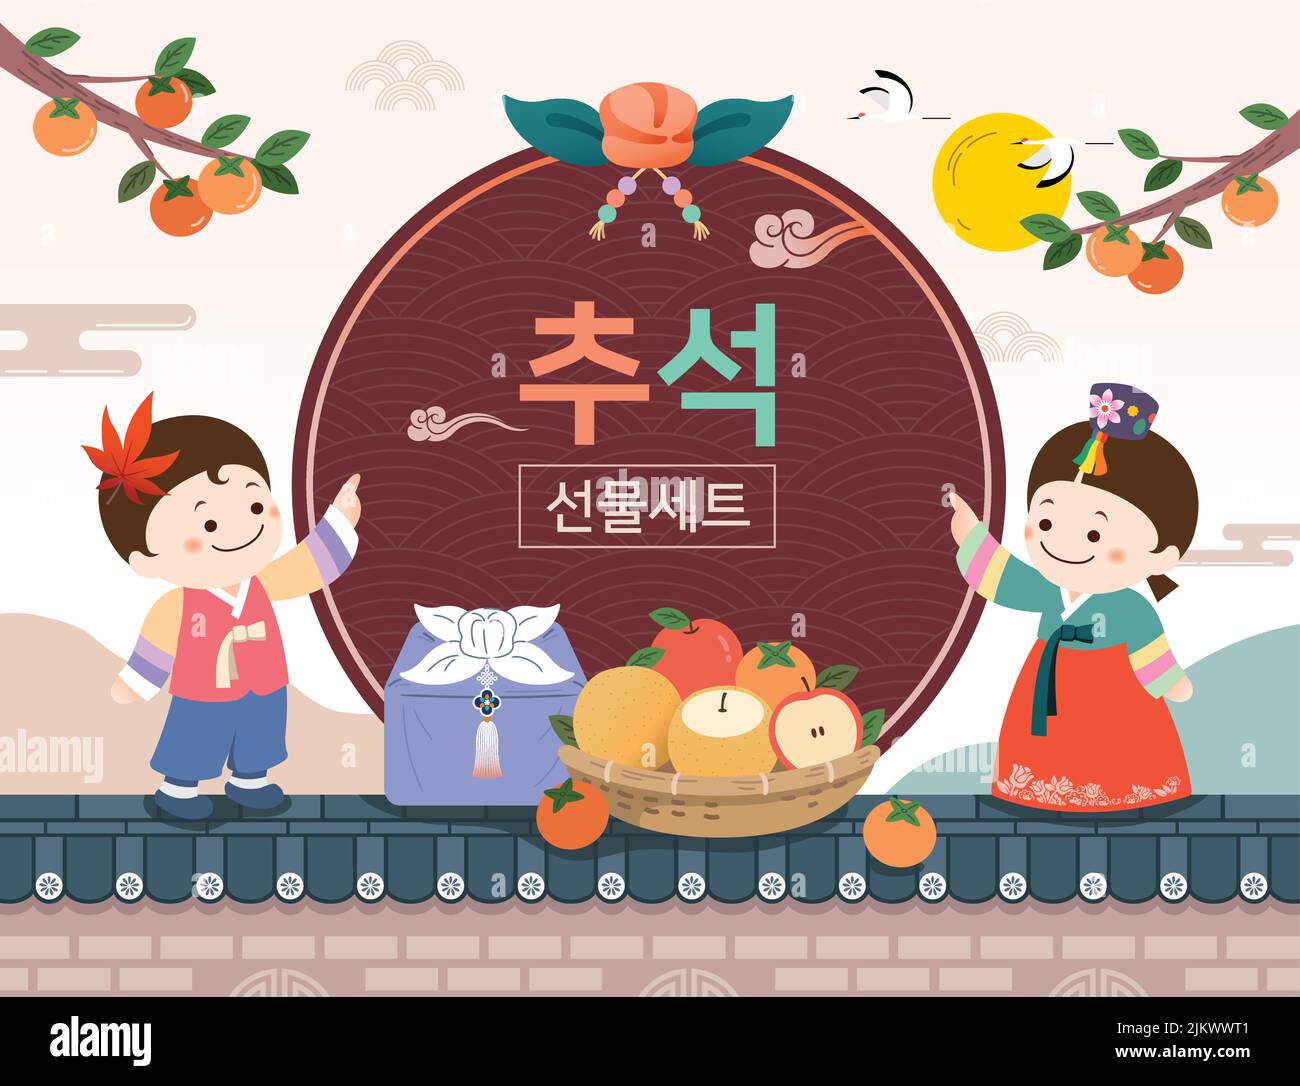 Koreanisches Erntedankfest-Design. Kinder in hanbok, traditionelle Geschenke. Thanksgiving Day, Geschenkset, koreanische Übersetzung. Stock Vektor